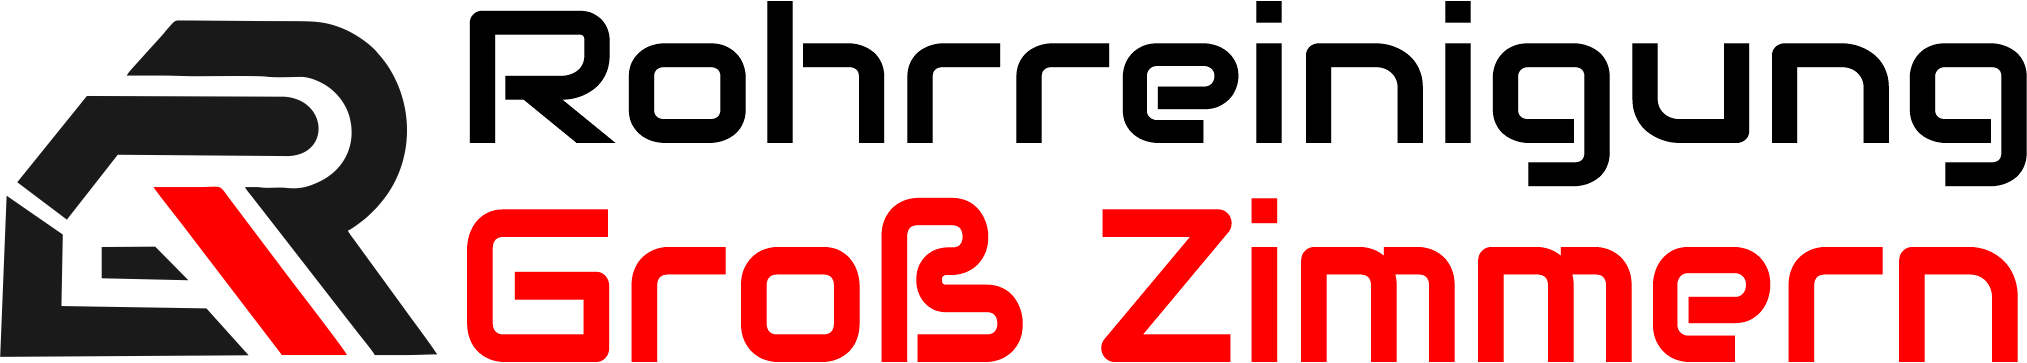 Rohrreinigung Gross Zimmern Logo